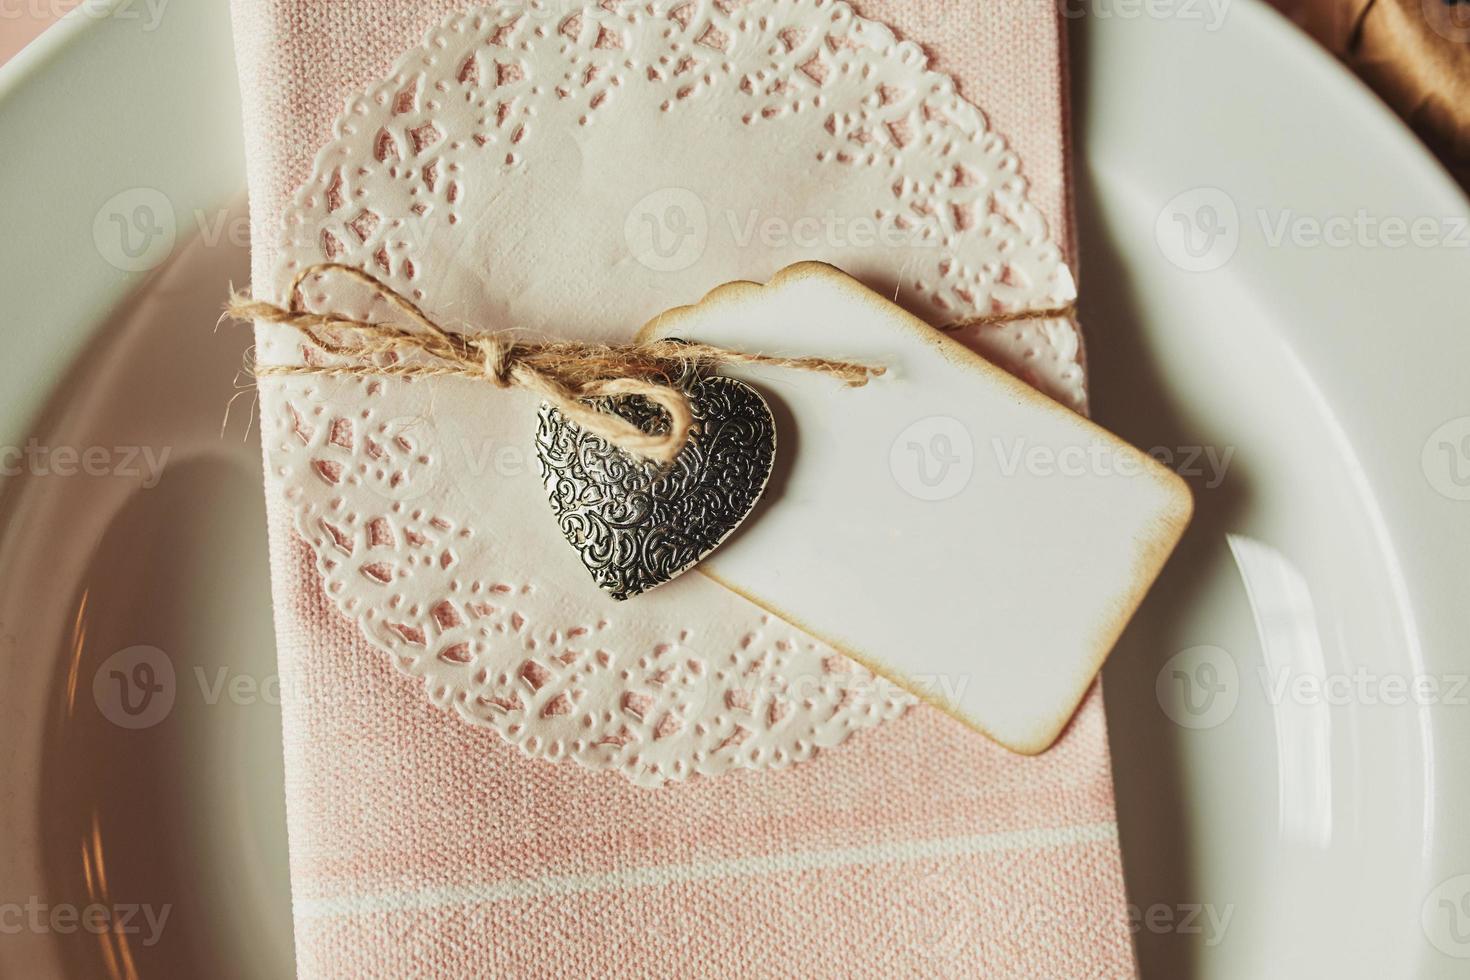 feestelijke tafelsetting voor Valentijnsdag met servet, teken voor de inscriptie en harten foto